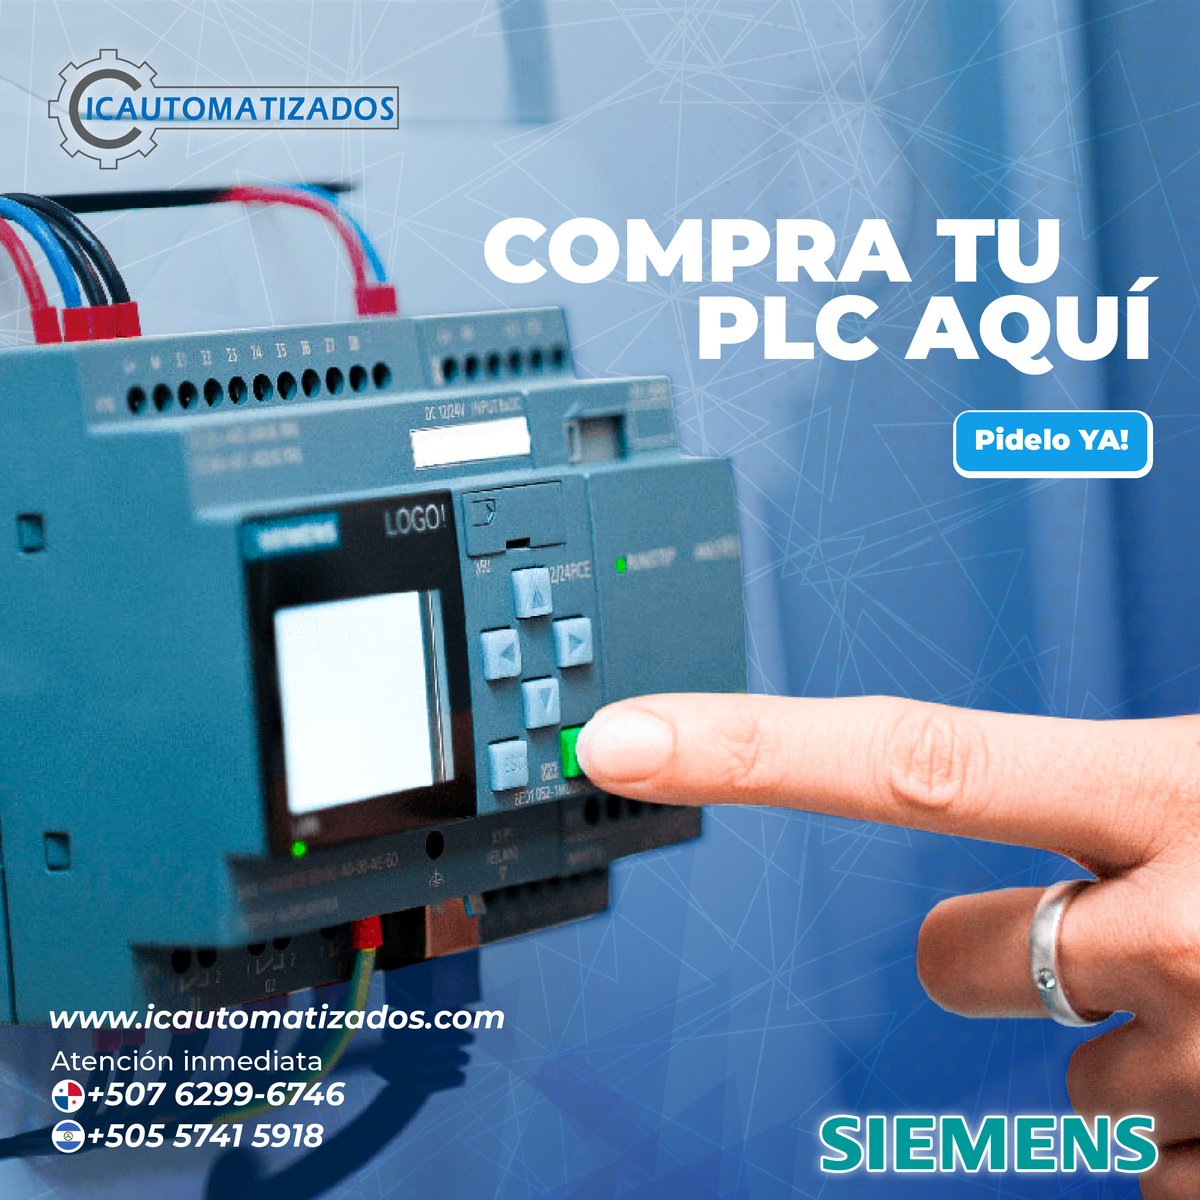 ¡Es hora de automatizar con éxito! 🚀 

🛒 Adquiere nuestros productos en:
icautomatizados.com
✉️ Para consultas y cotizaciones:
ventas@icautomatizados.com

#industria #automatizacionycontrol #altacalidad #panamá #nicaragua #industriales #calidaddeenergia #energia #ingenieria